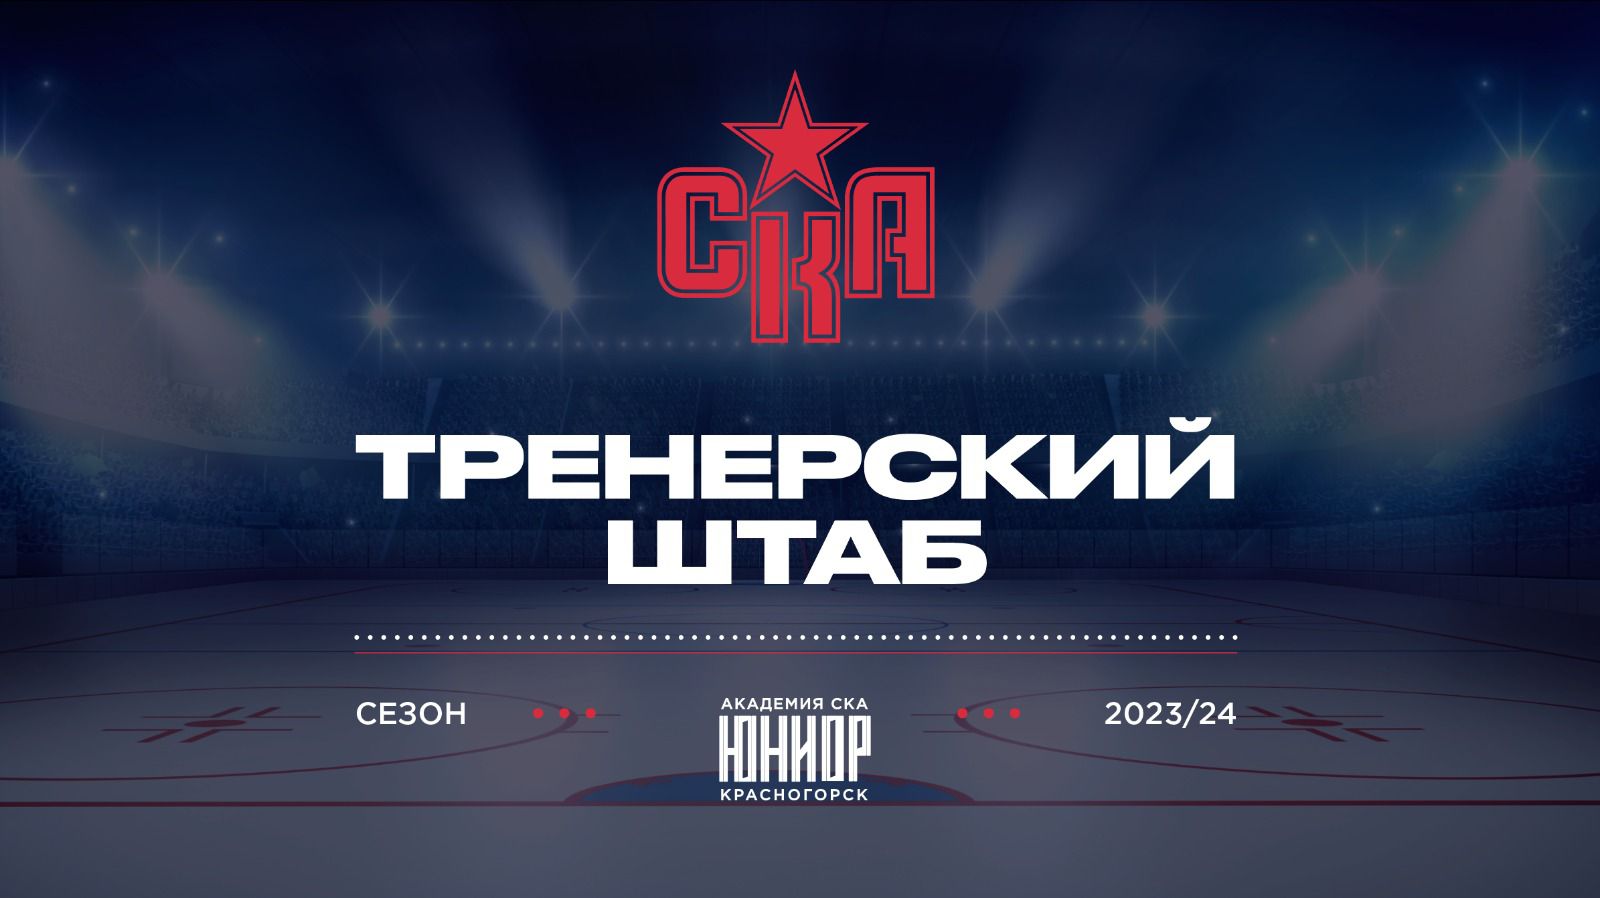 Сформирован тренерский штаб «Академии СКА-Юниор» на сезон 2023/2024